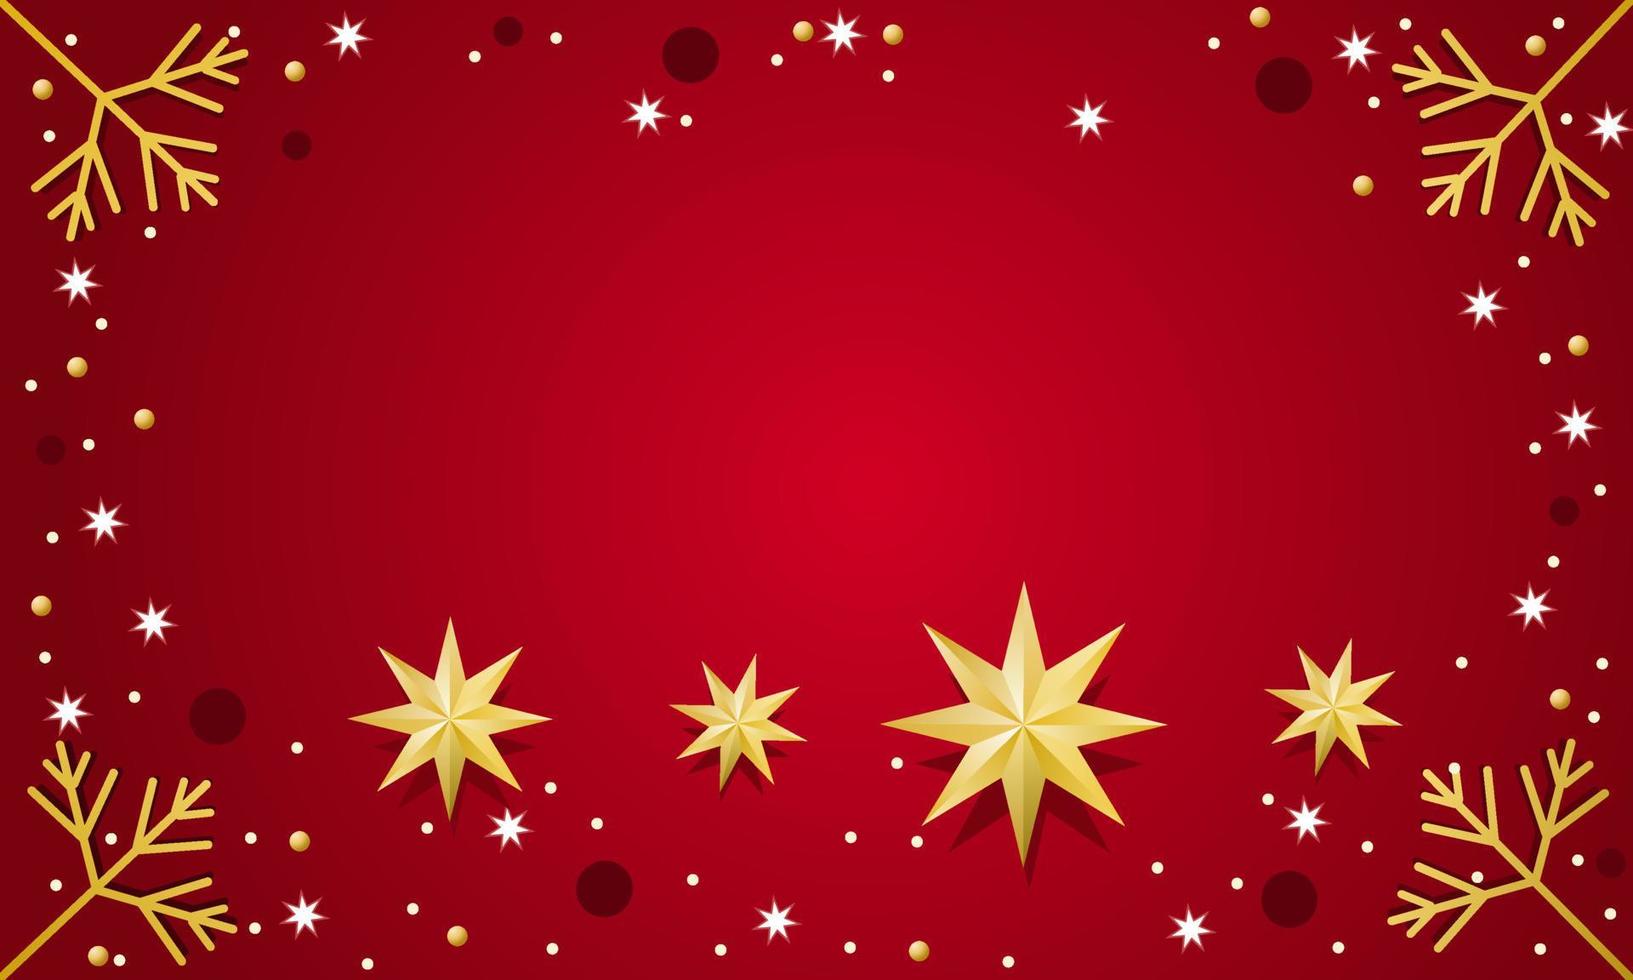 Hình nền Giáng sinh đỏ với các quả bóng, ngôi sao. Lời chúc Giáng sinh 2022 Sắc đỏ chính là tinh túy của mùa Giáng sinh, hãy trang trí màn hình điện thoại hay máy tính của bạn bằng hình nền Giáng sinh đỏ đầy ấn tượng với các quả bóng, ngôi sao cùng lời chúc Giáng sinh 2022 ý nghĩa. Hãy nhấn vào hình để cập nhật hình nền mới nhất cho thiết bị của bạn!